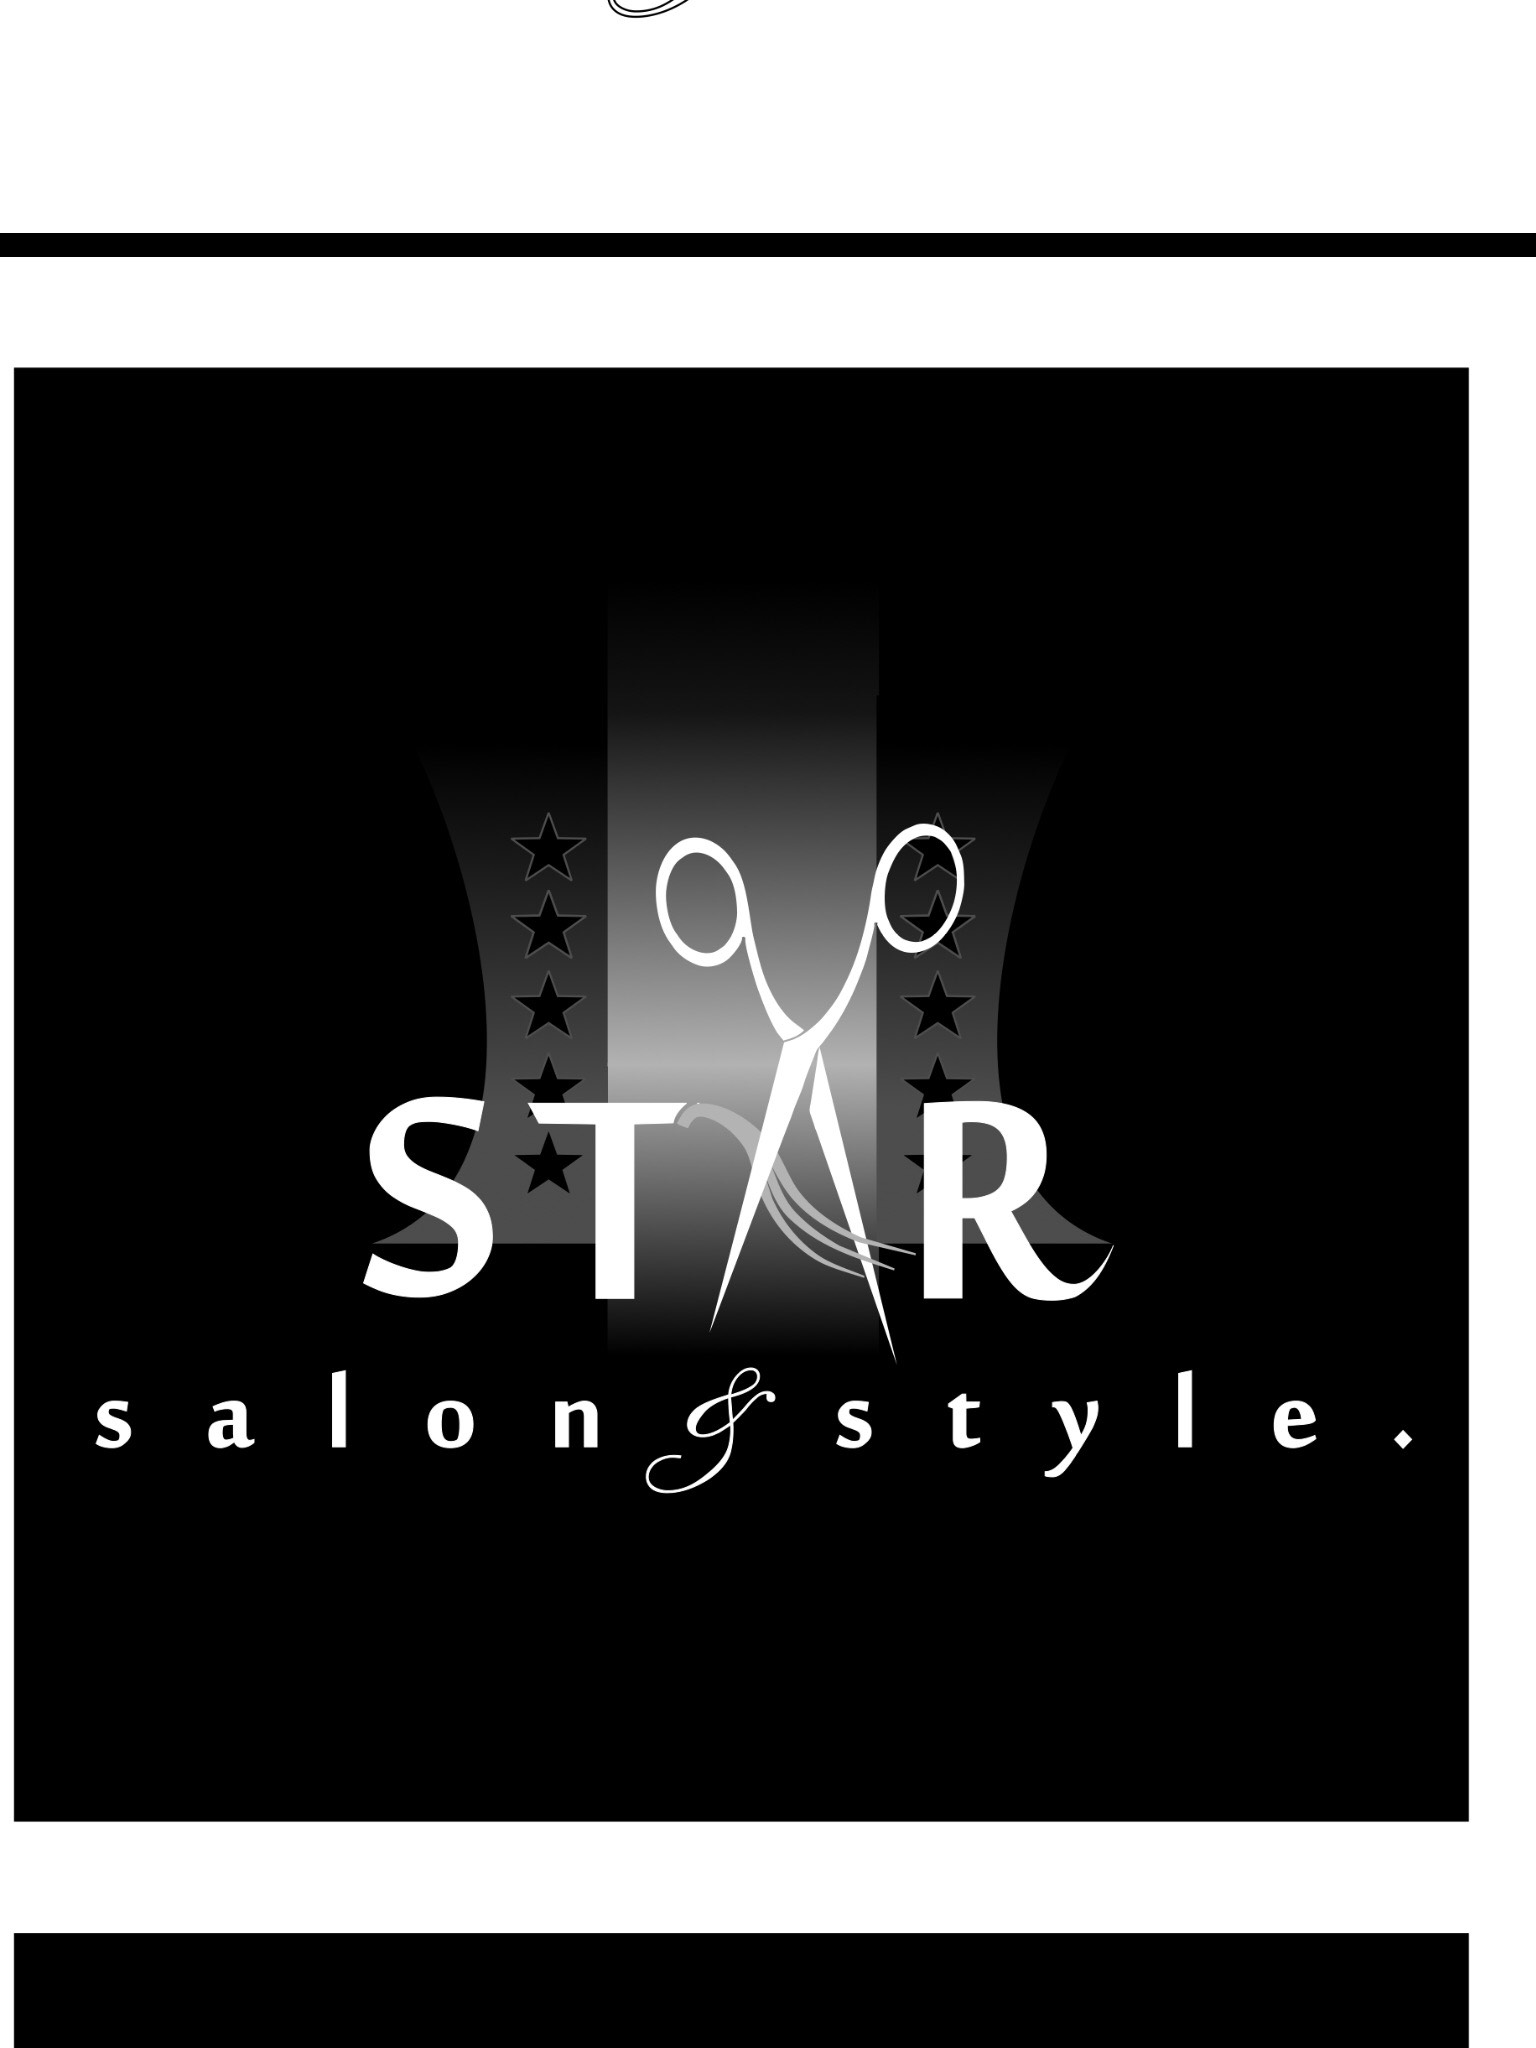 Star Salon.JPG